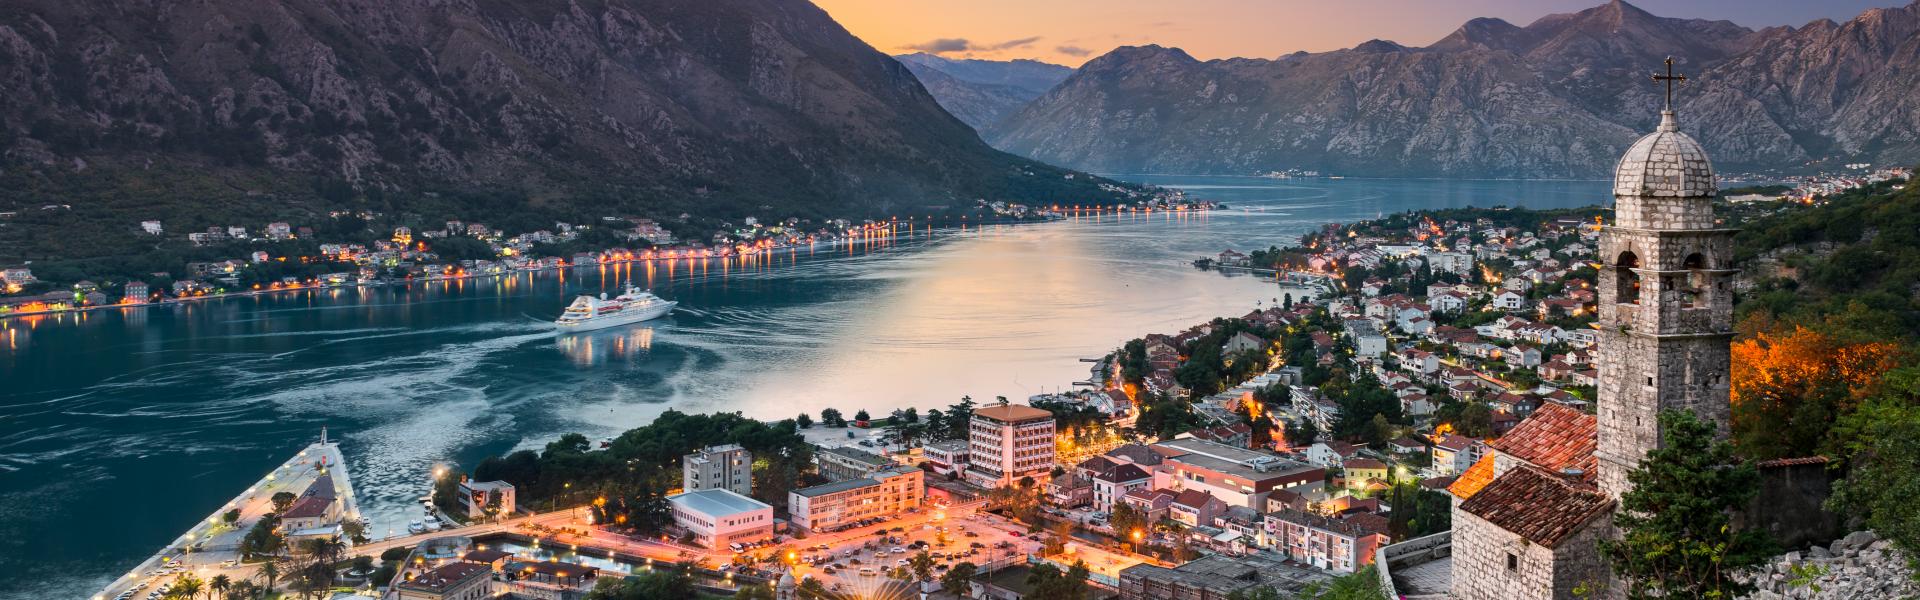 Ferienwohnungen & Ferienhäuser für Urlaub in Montenegro - Casamundo